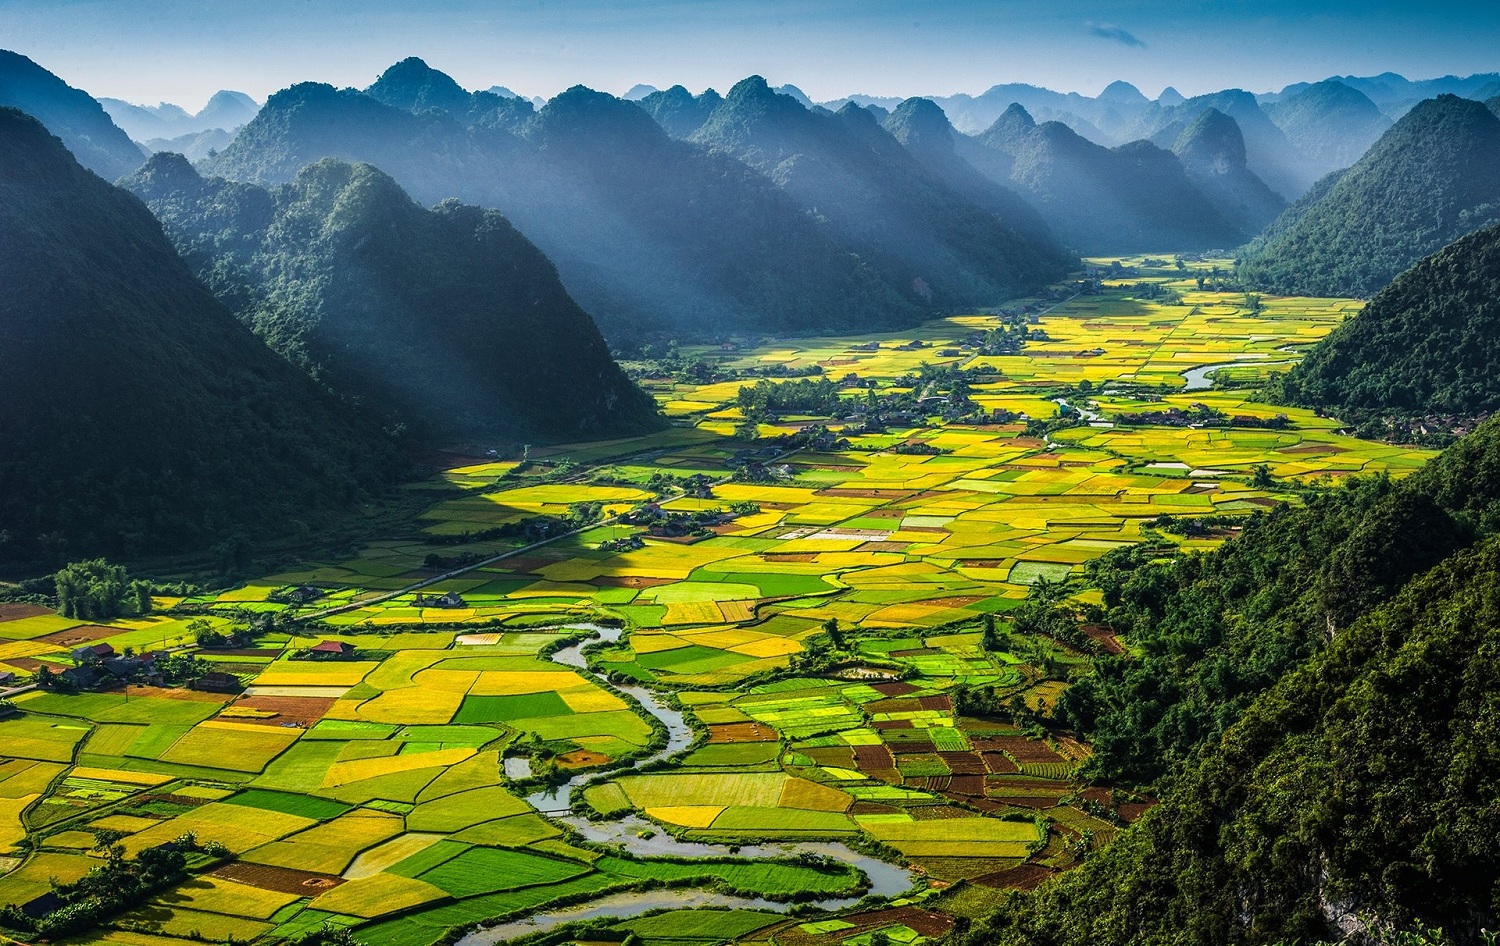 Bạn là người yêu thiên nhiên? Hãy cùng tìm hiểu về những bức ảnh đẹp thiên nhiên tại Việt Nam, với những con đường mòn, mây trời và những khu rừng nguyên sinh. Điều này sẽ khiến bạn muốn khám phá thêm vẻ đẹp của quê hương mình.